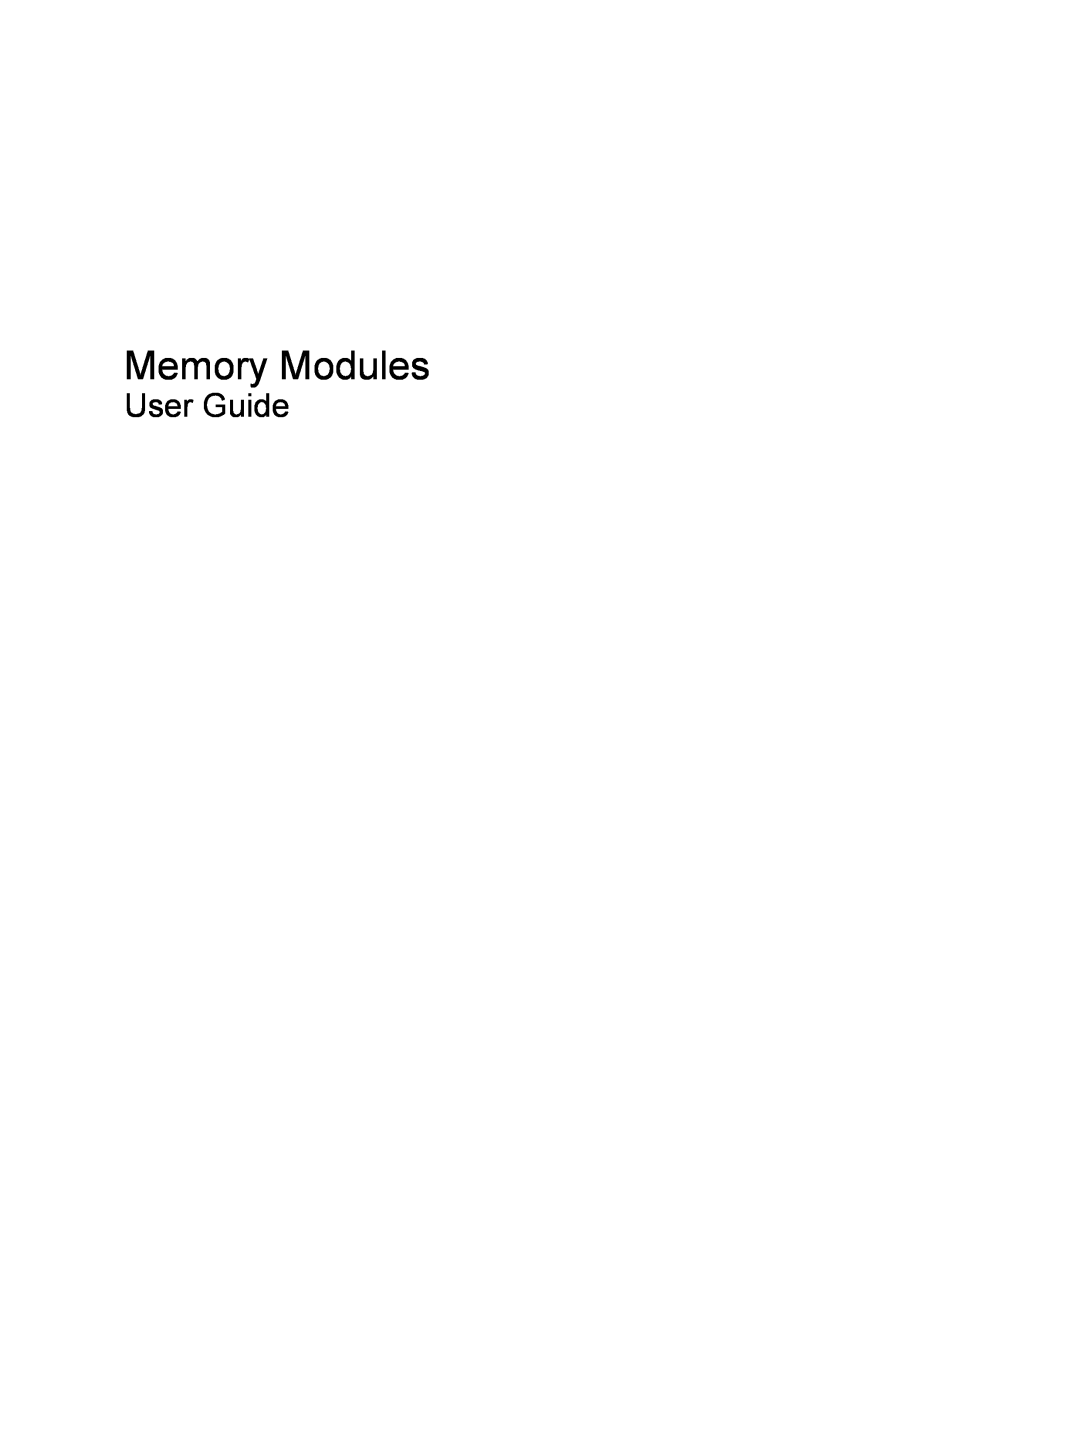 HP F768WM manual Memory Modules, User Guide 